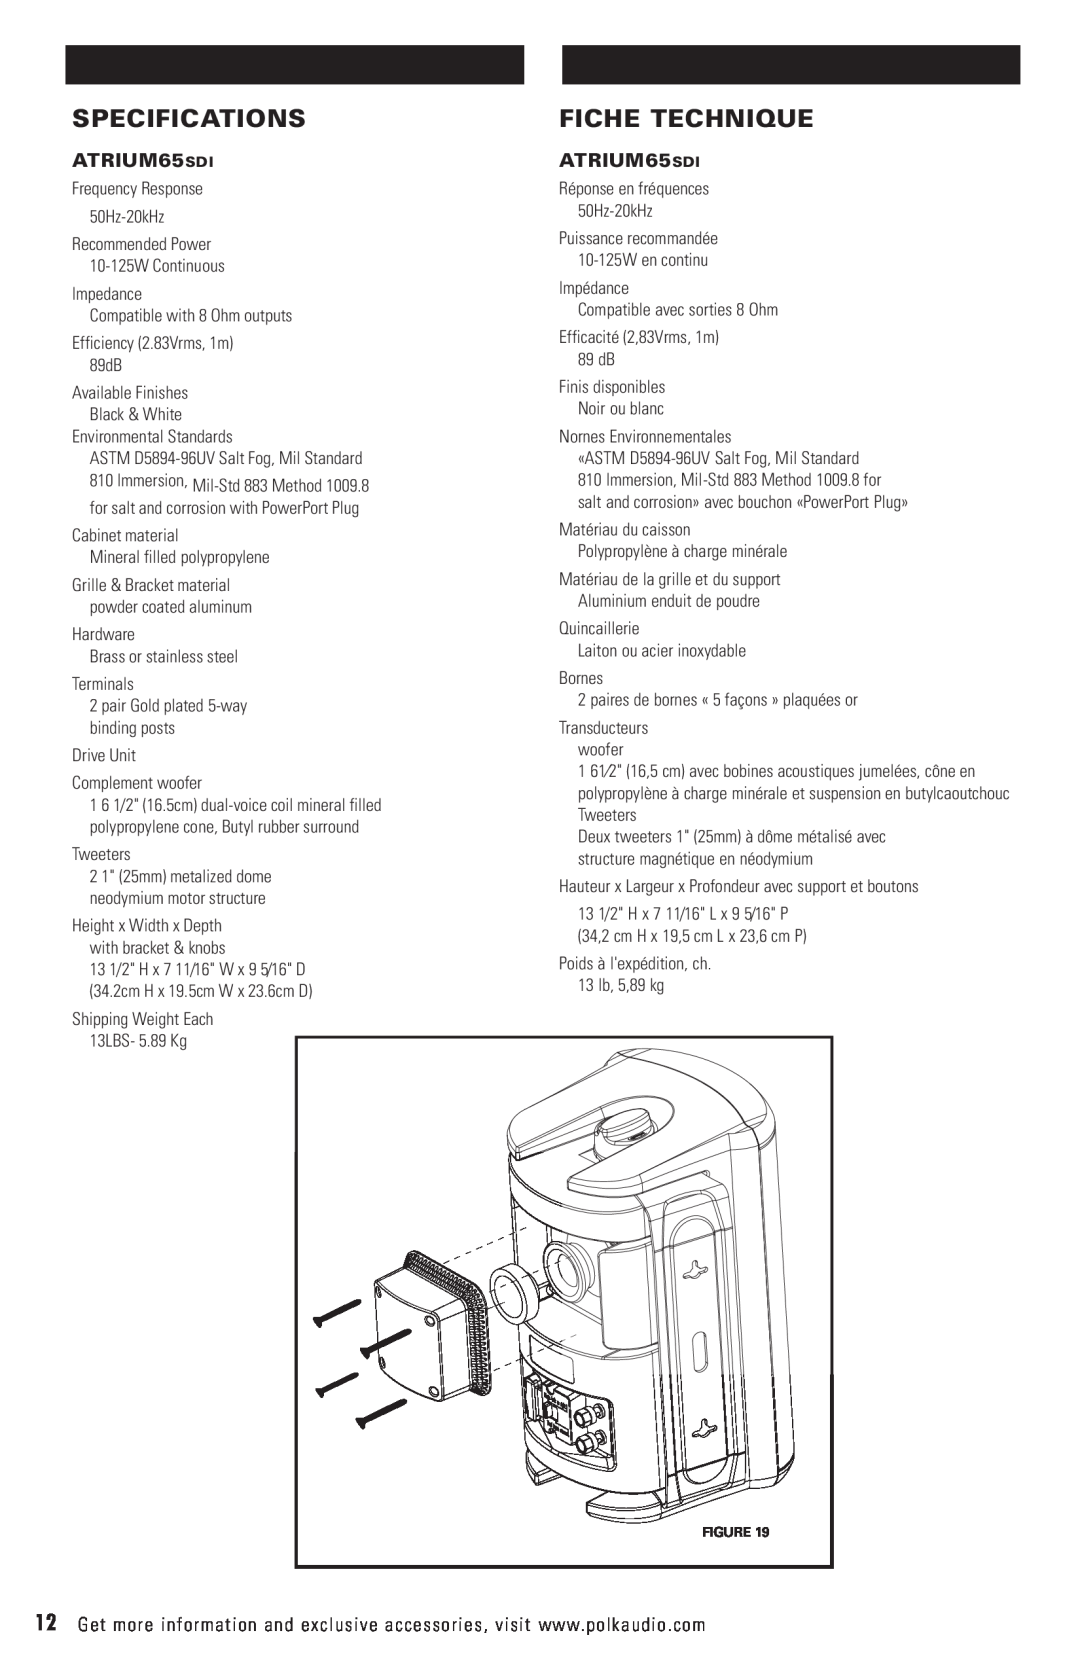 Polk Audio ATRIUM65SDI owner manual Specifications, Fiche Technique 